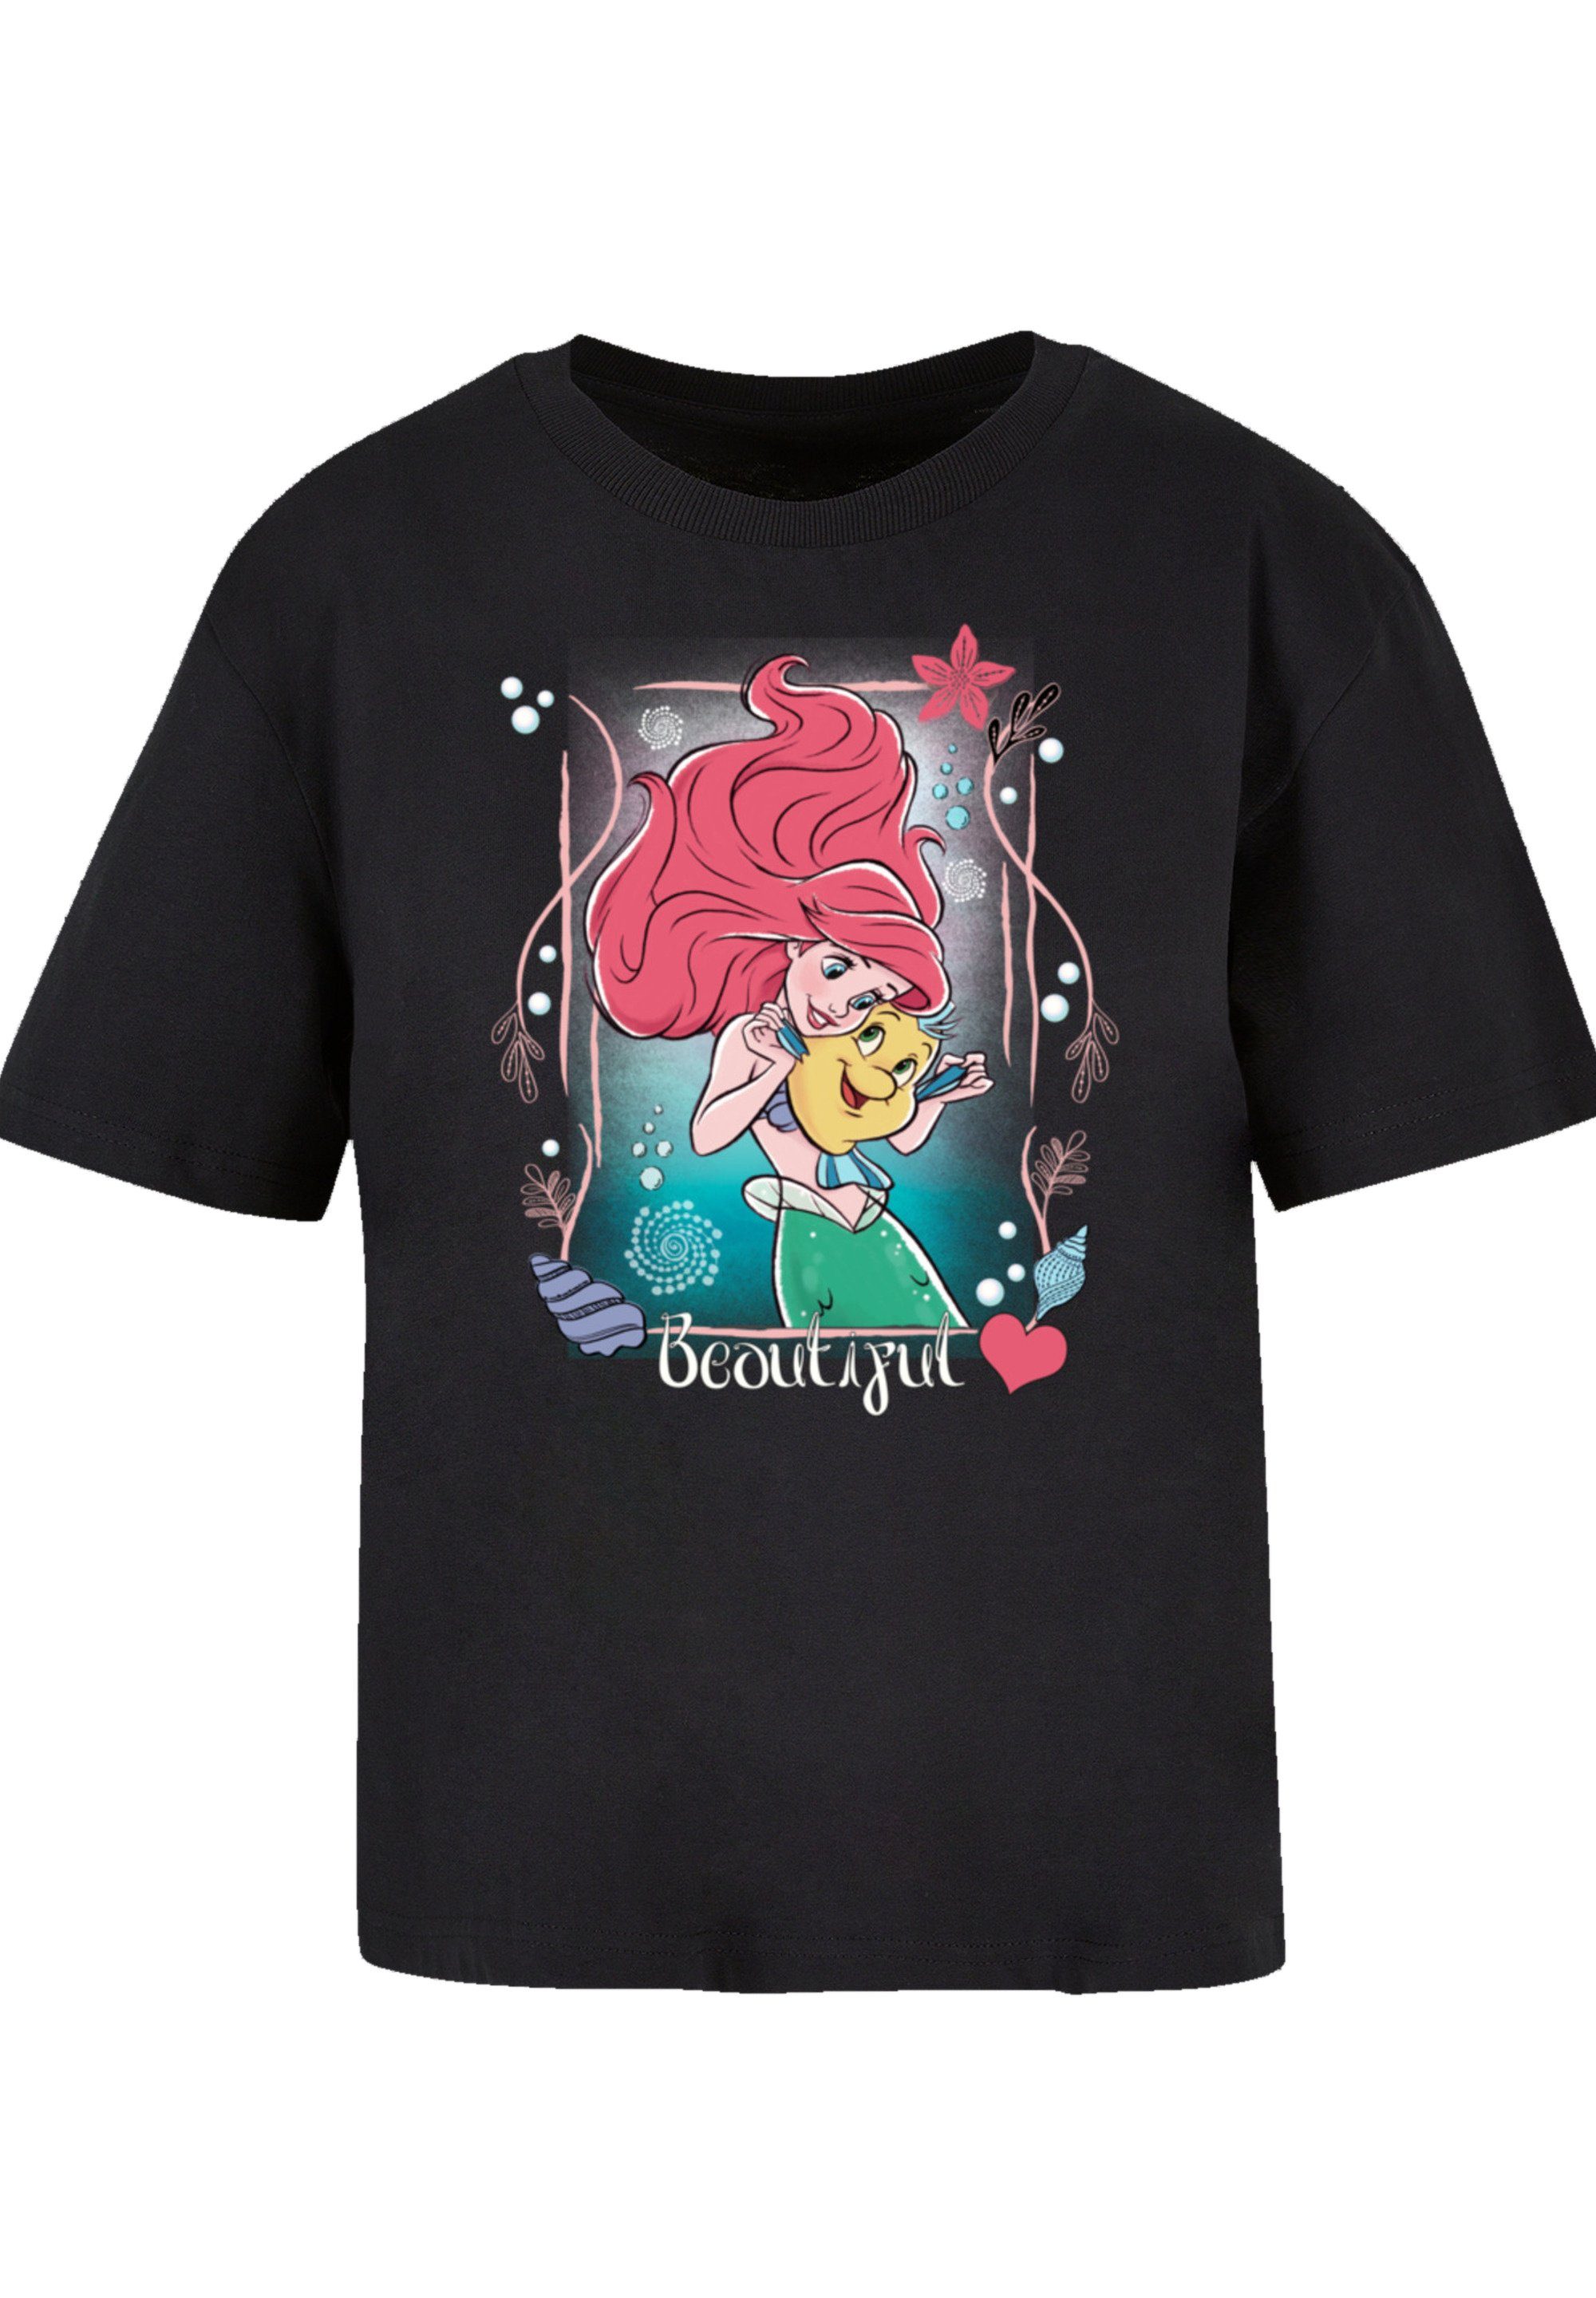 Prinzessin Komfortabel und die Premium vielseitig Qualität, T-Shirt Meerjungfrau Disney Arielle F4NT4STIC kombinierbar